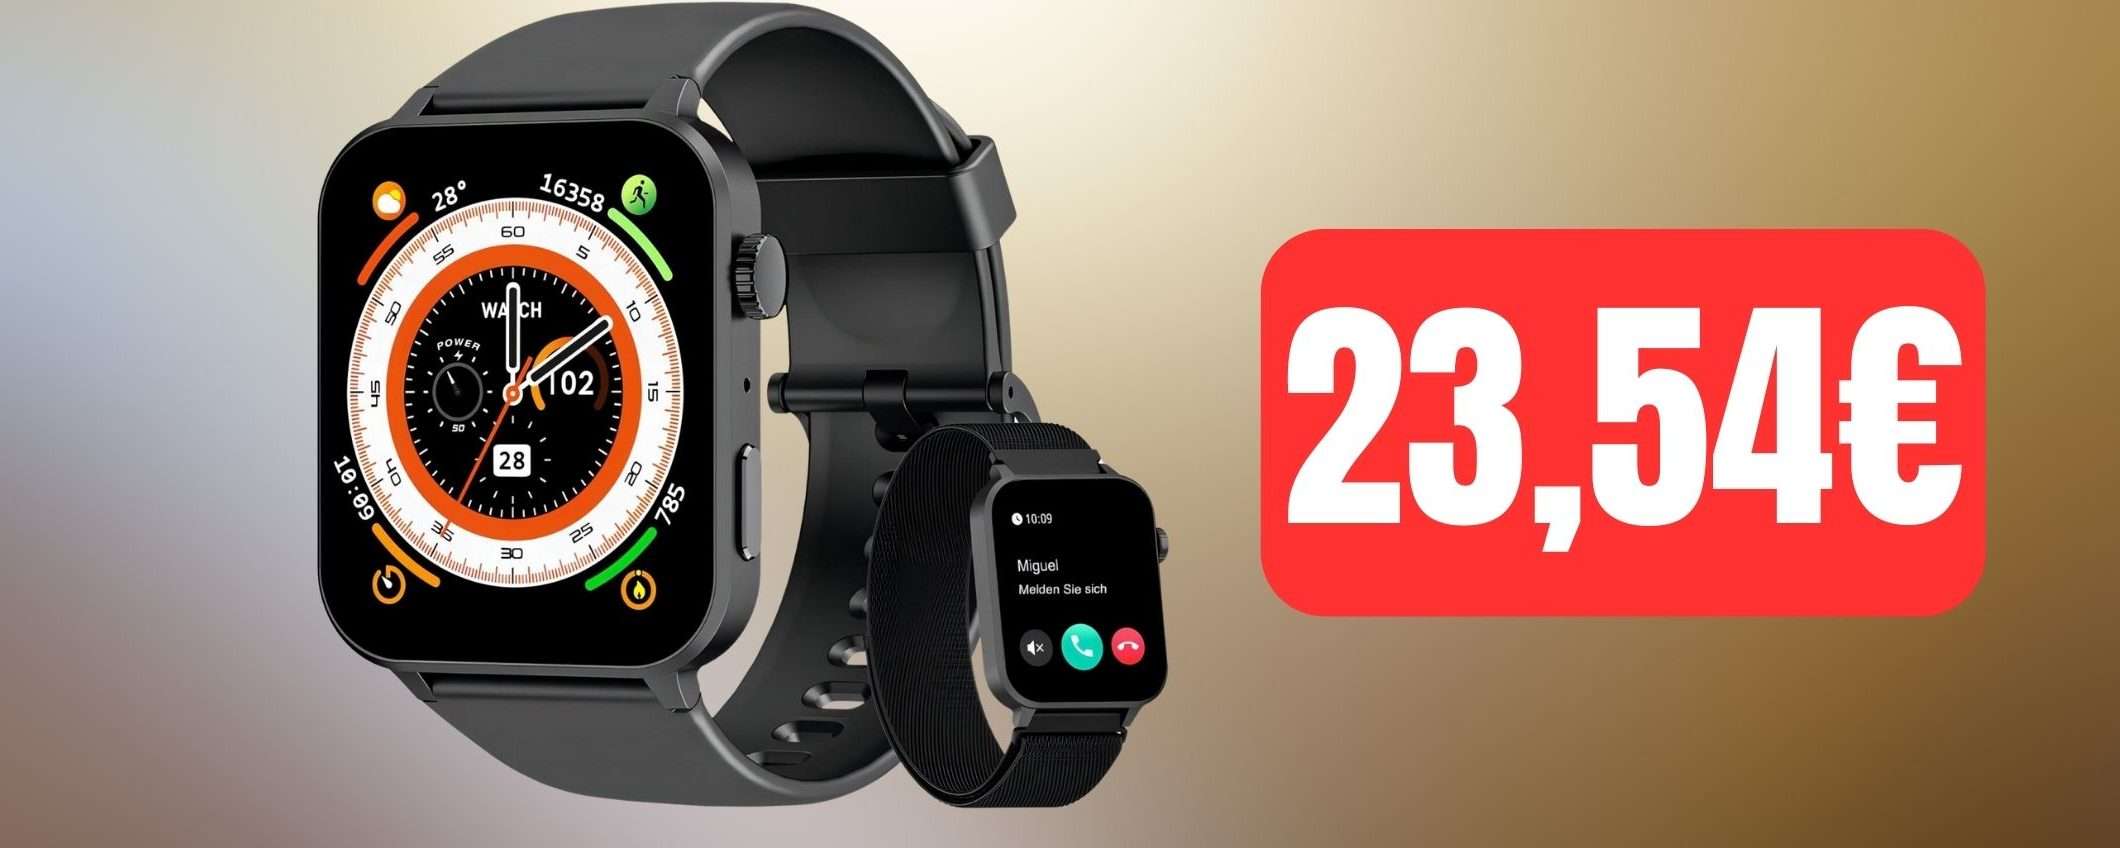 Chiamate direttamente dal polso con questo smartwatch a soli 23€ su Amazon